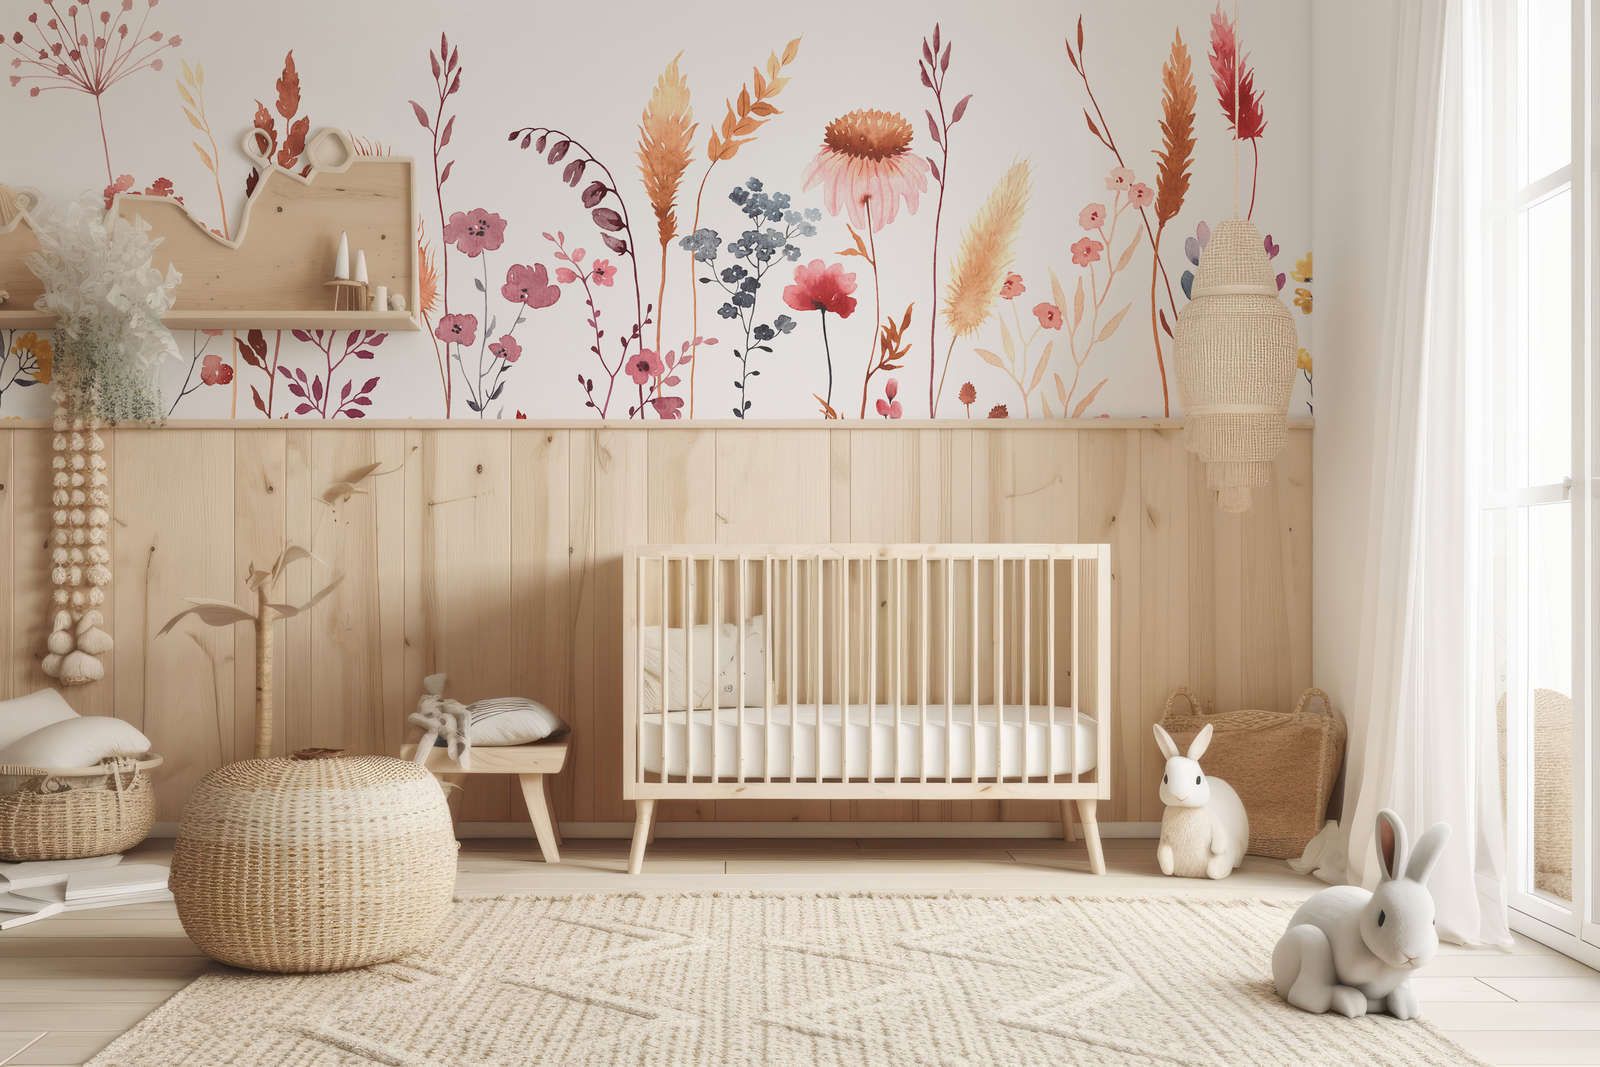             Fototapete fürs Kinderzimmer mit Blättern und Gräsern – Glattes & mattes Vlies
        